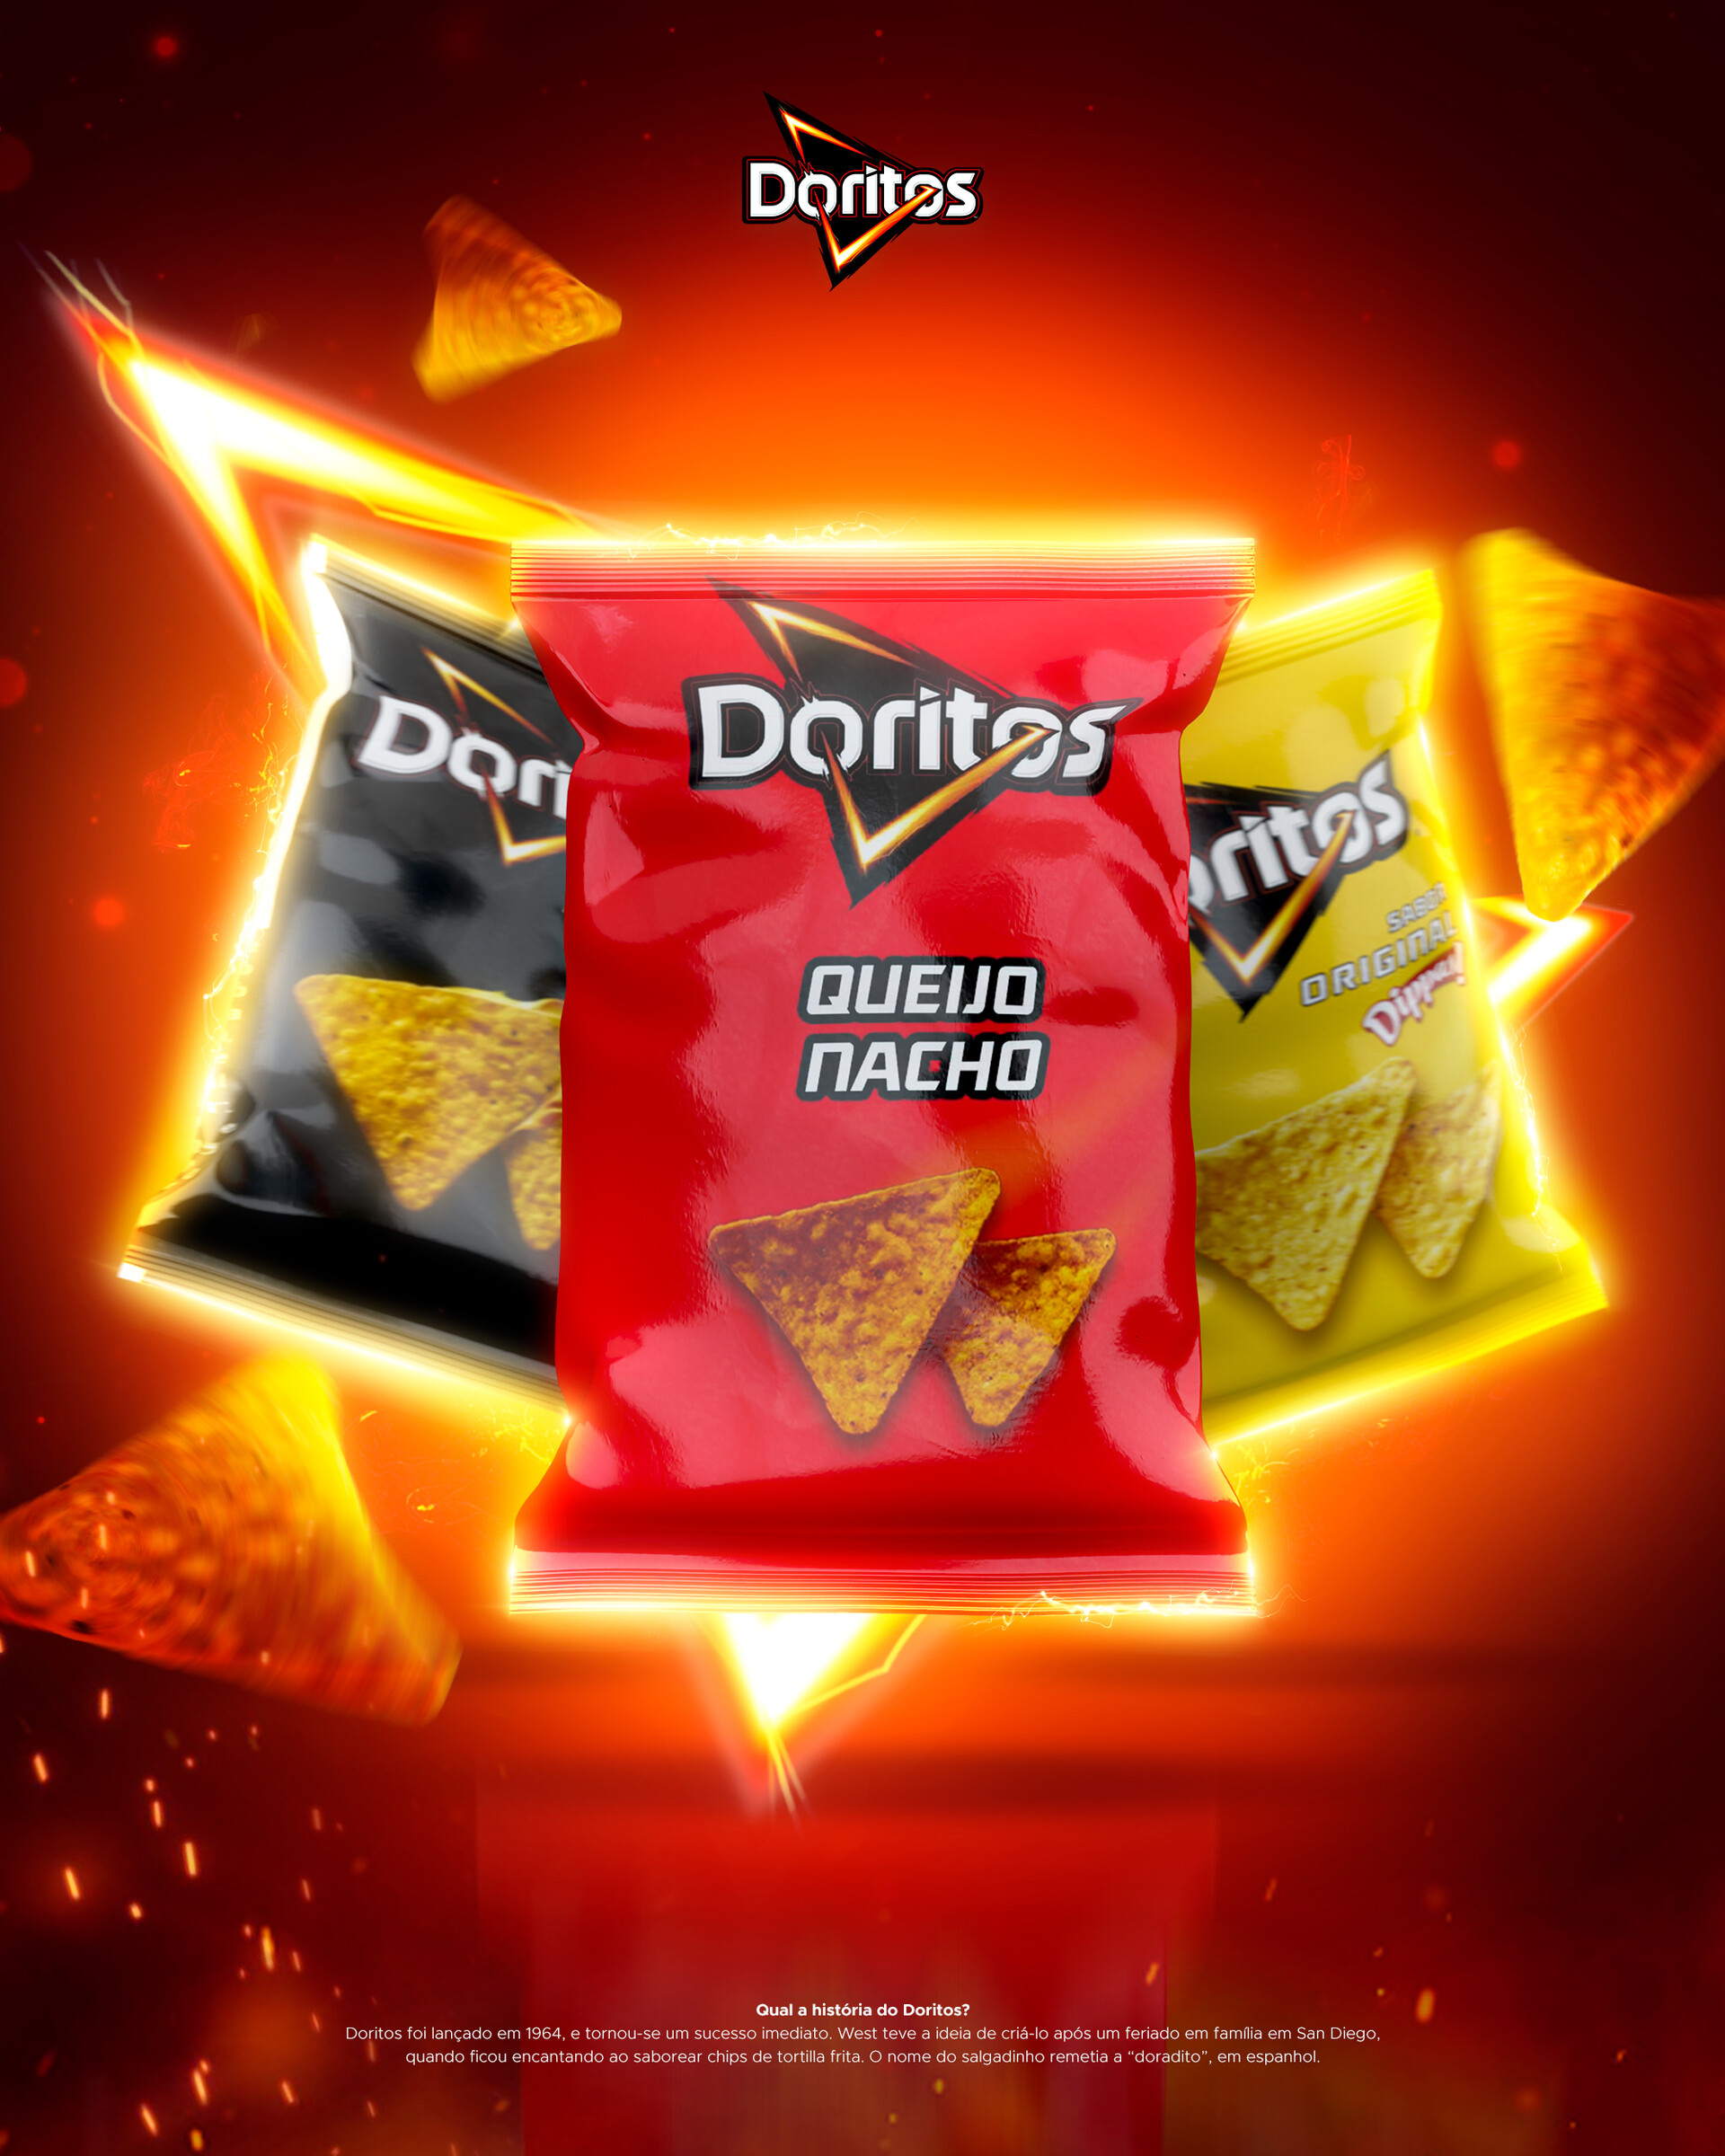 ArtStation - Doritos Snack 3D